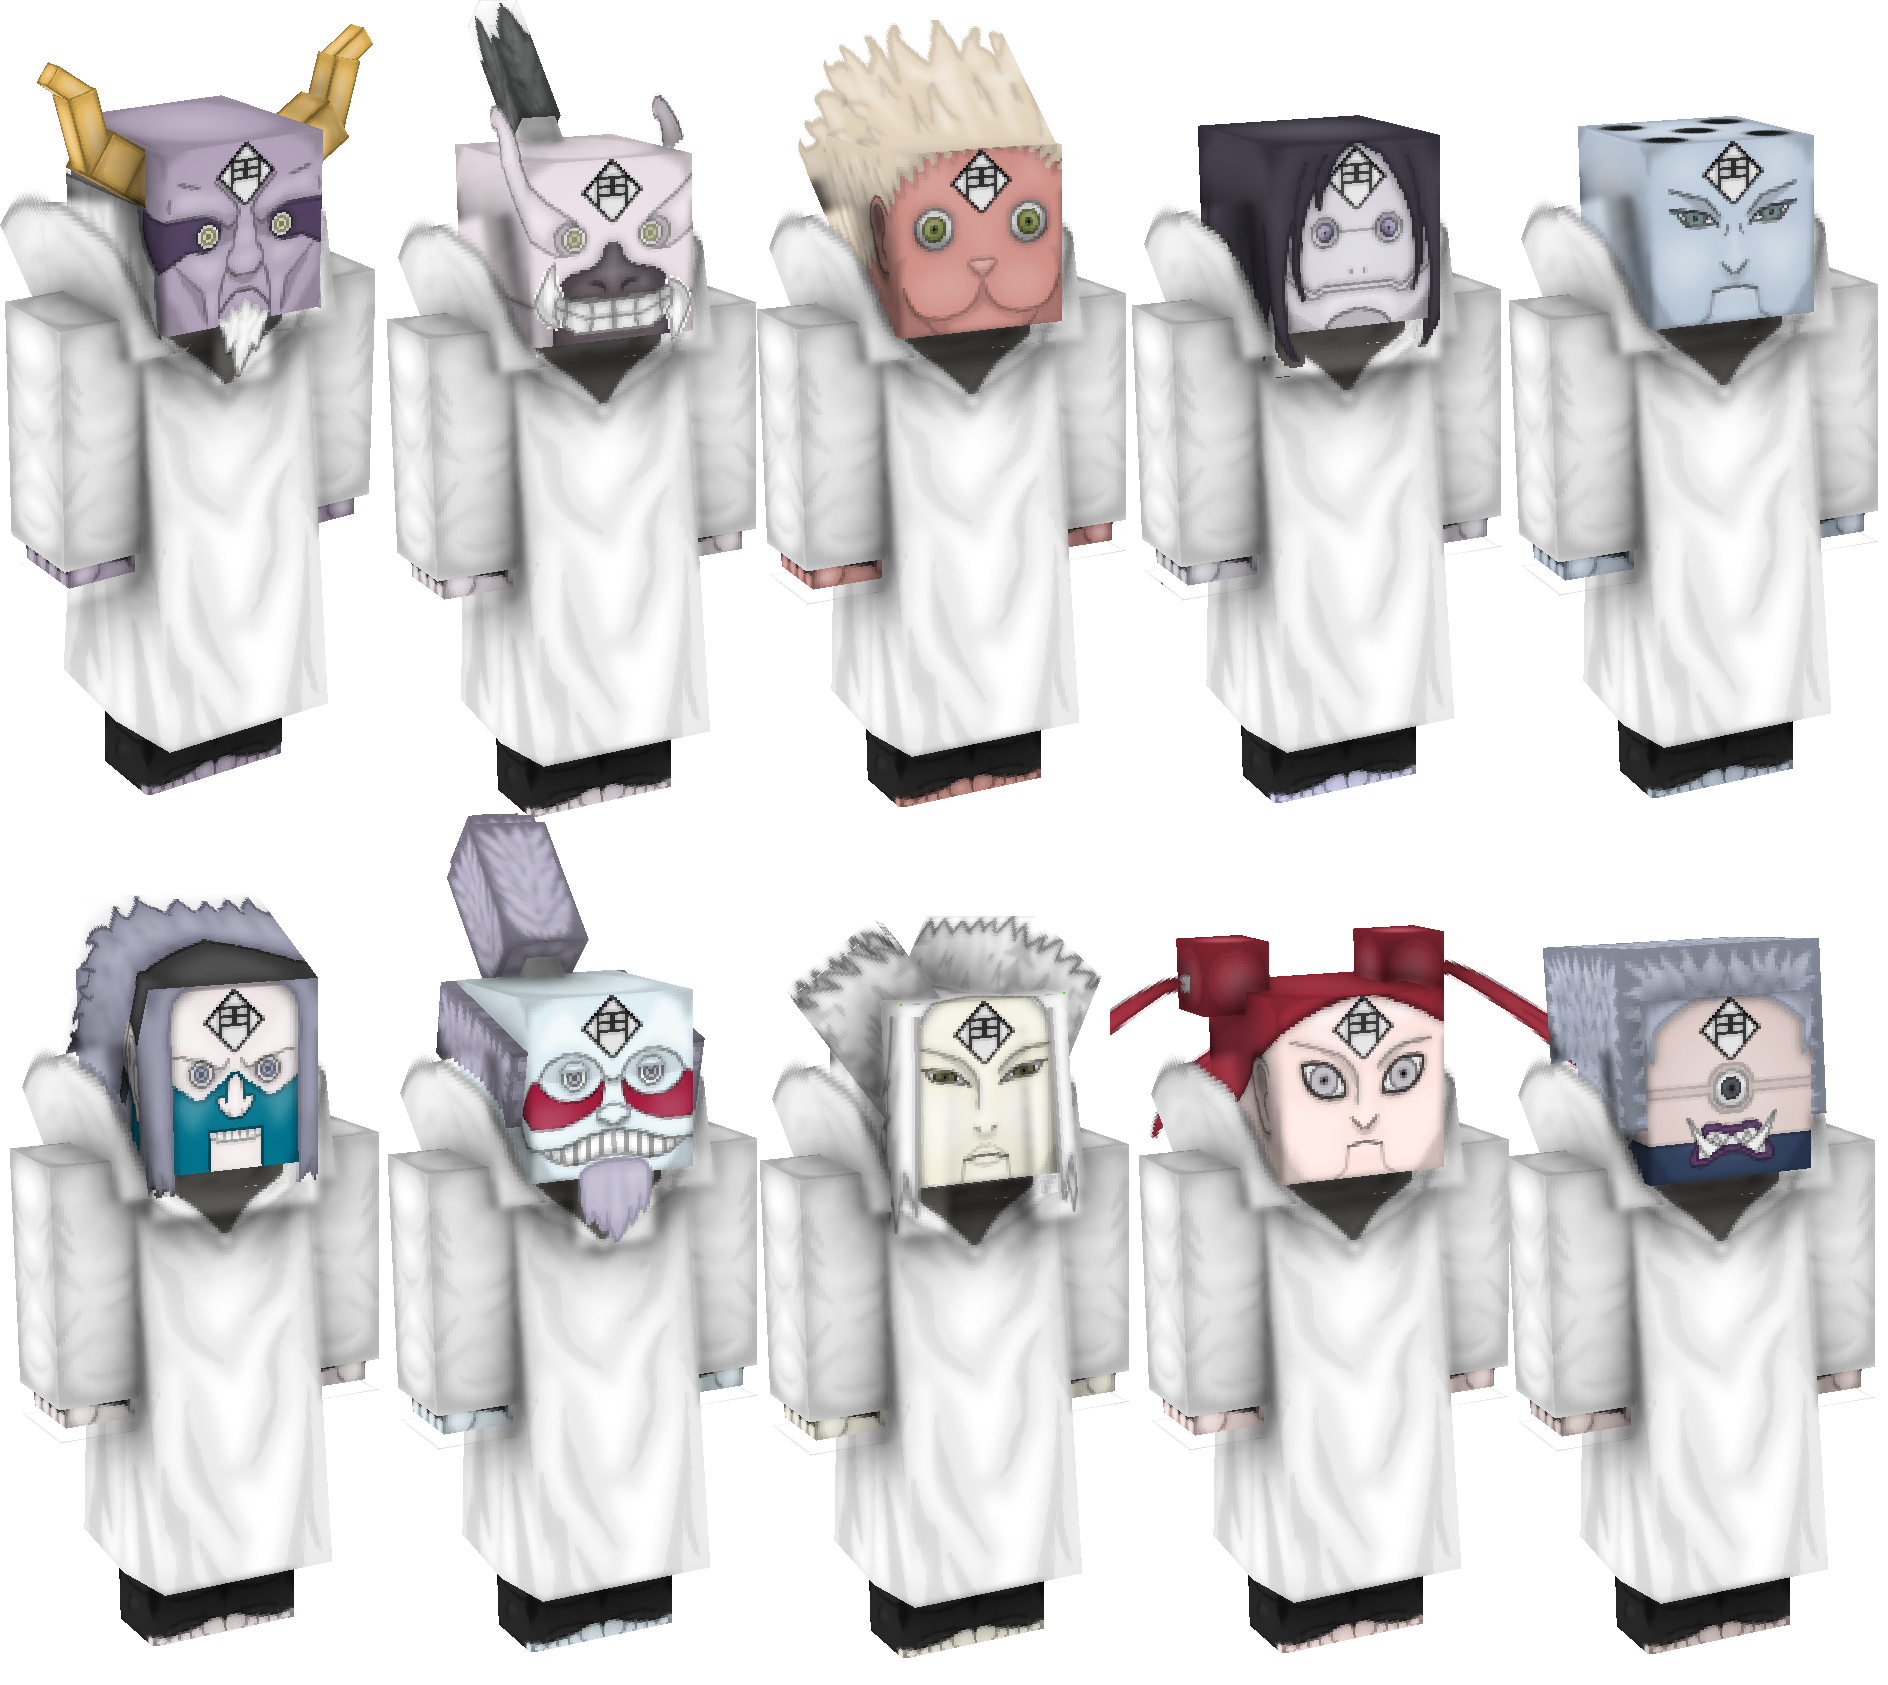 Chikamatsu 10 puppets